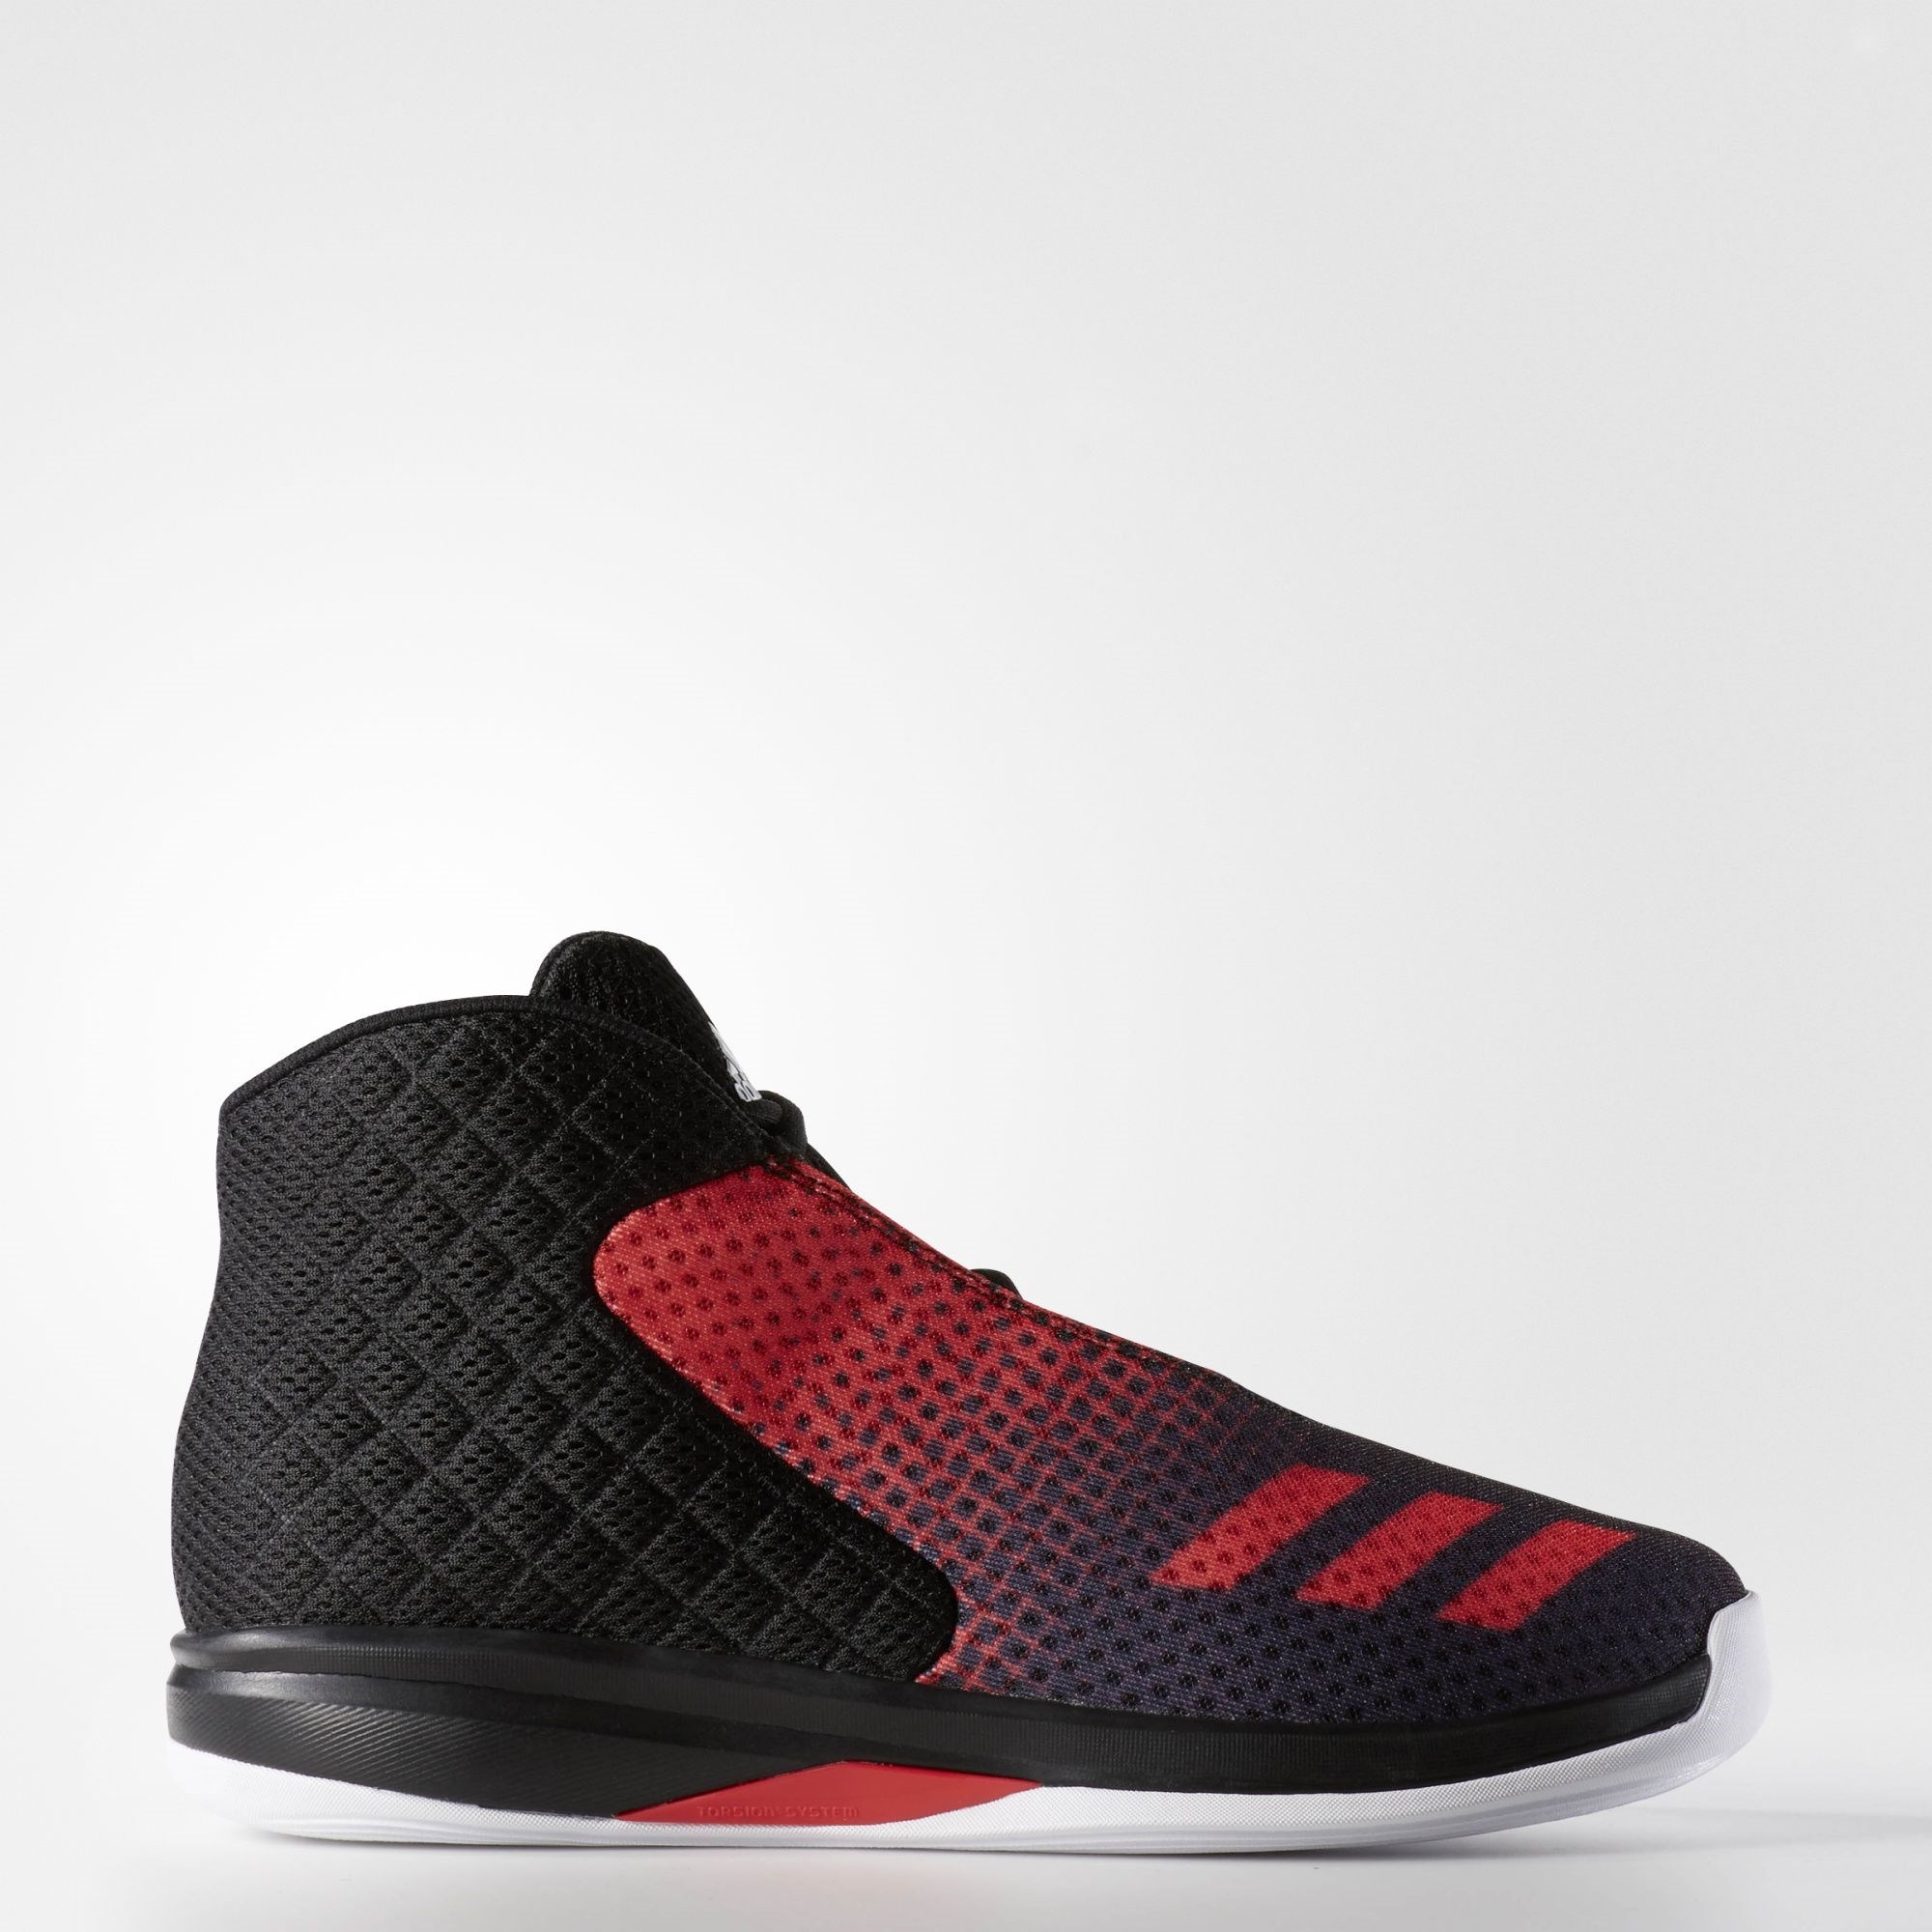 adidas Court Fury 2016 Erkek Basketbol Ayakkabısı Ürün kodu : AQ7752 |  Etichet Sport